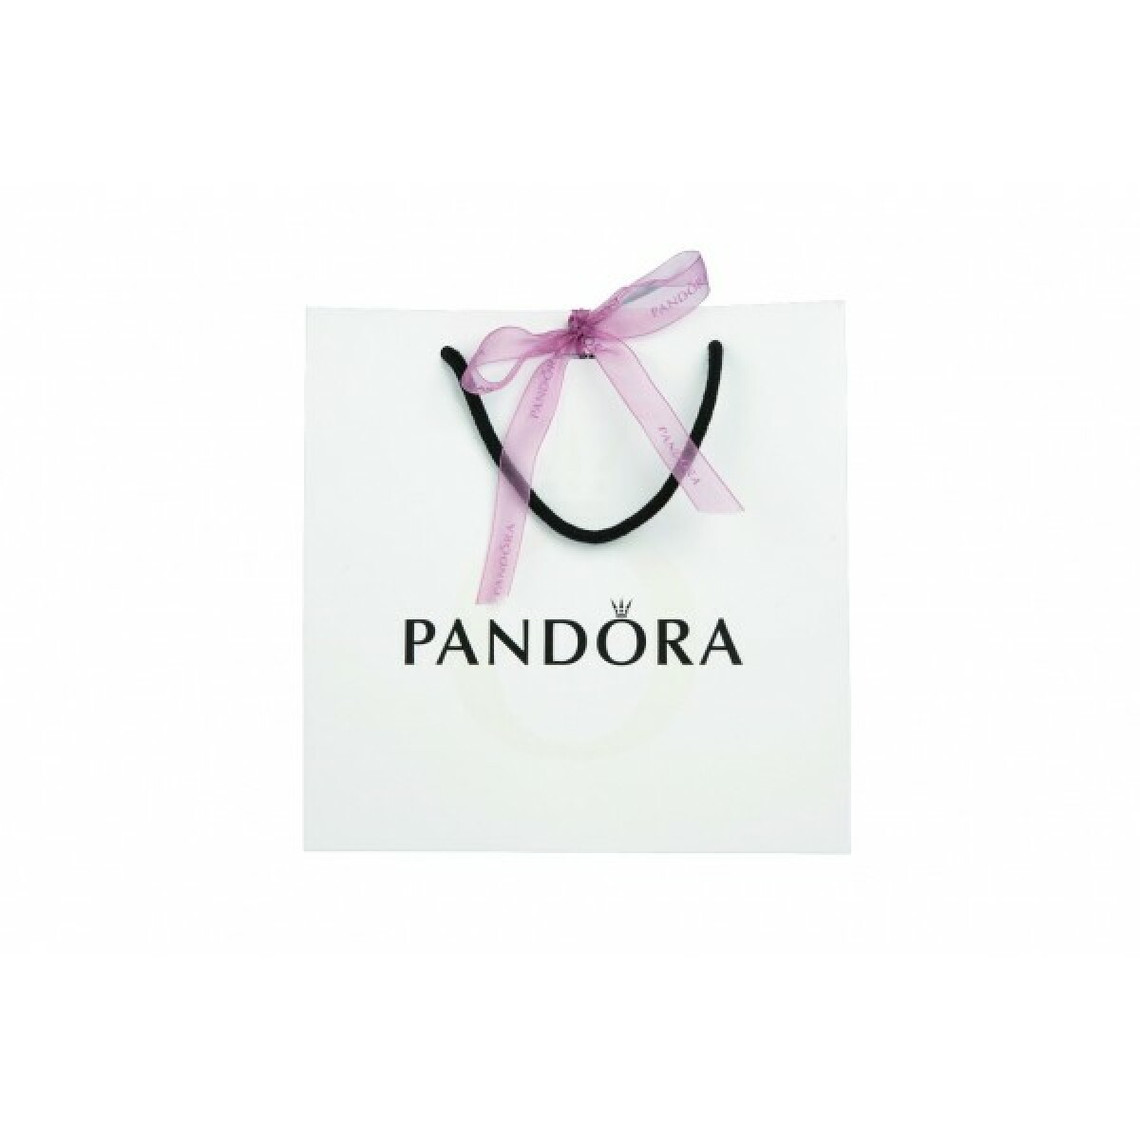 Pandora Charm Clip Rangée Scintillante Incolore Pandora Moments Argent 925/1000ᵉ Argent 925/1000 791972CZ